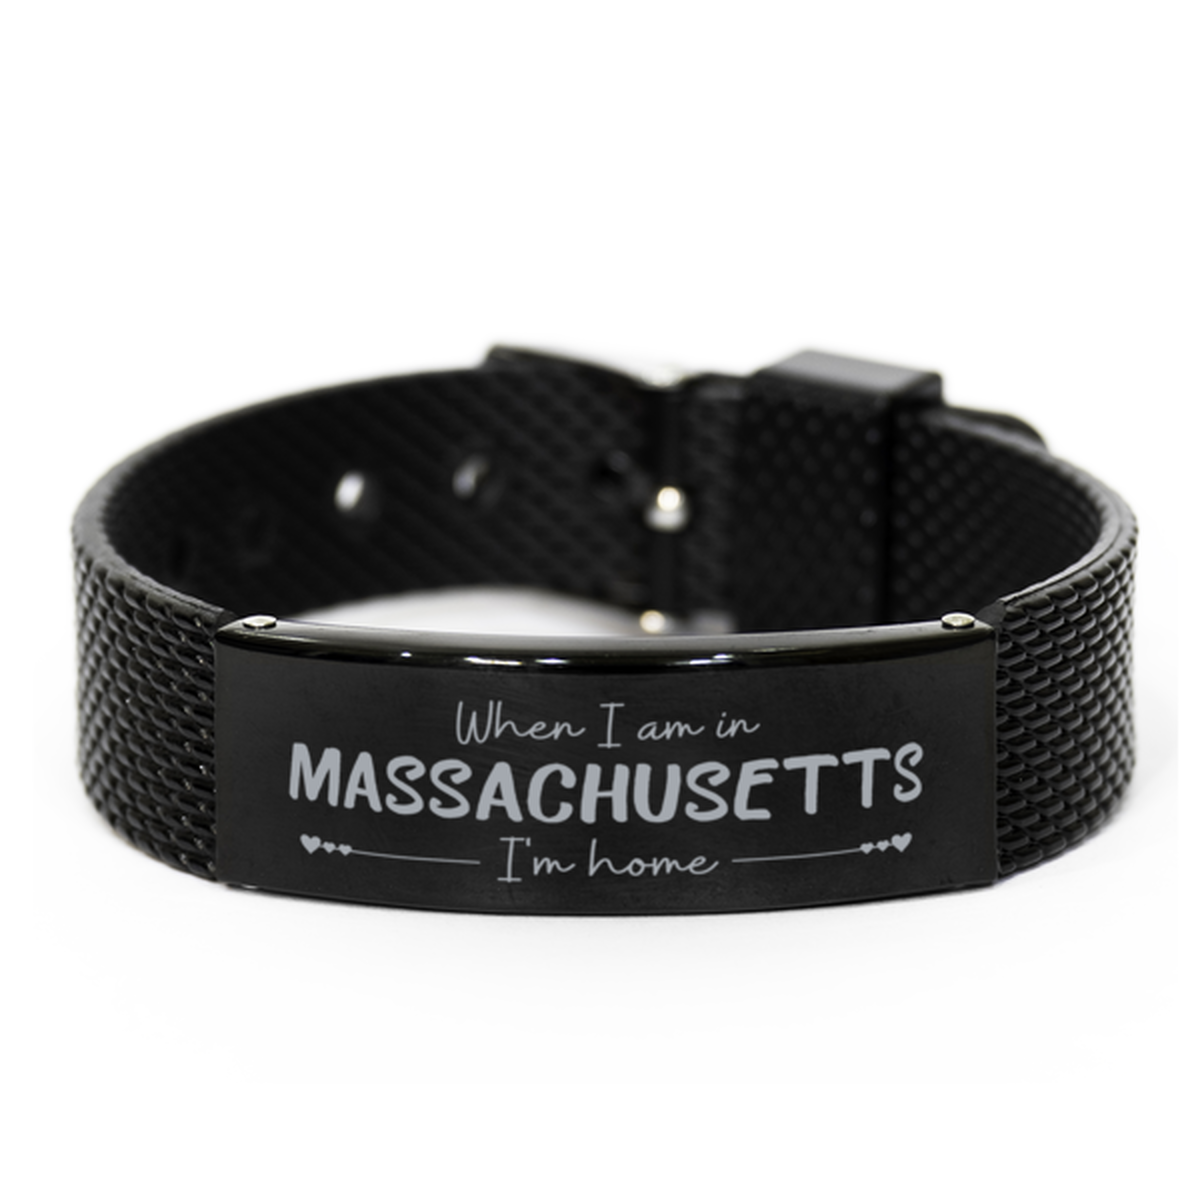 When I am in Massachusetts I'm home Black Shark Mesh Bracelet, Cheap Gifts For Massachusetts, State Massachusetts Birthday Gifts for Friends Coworker